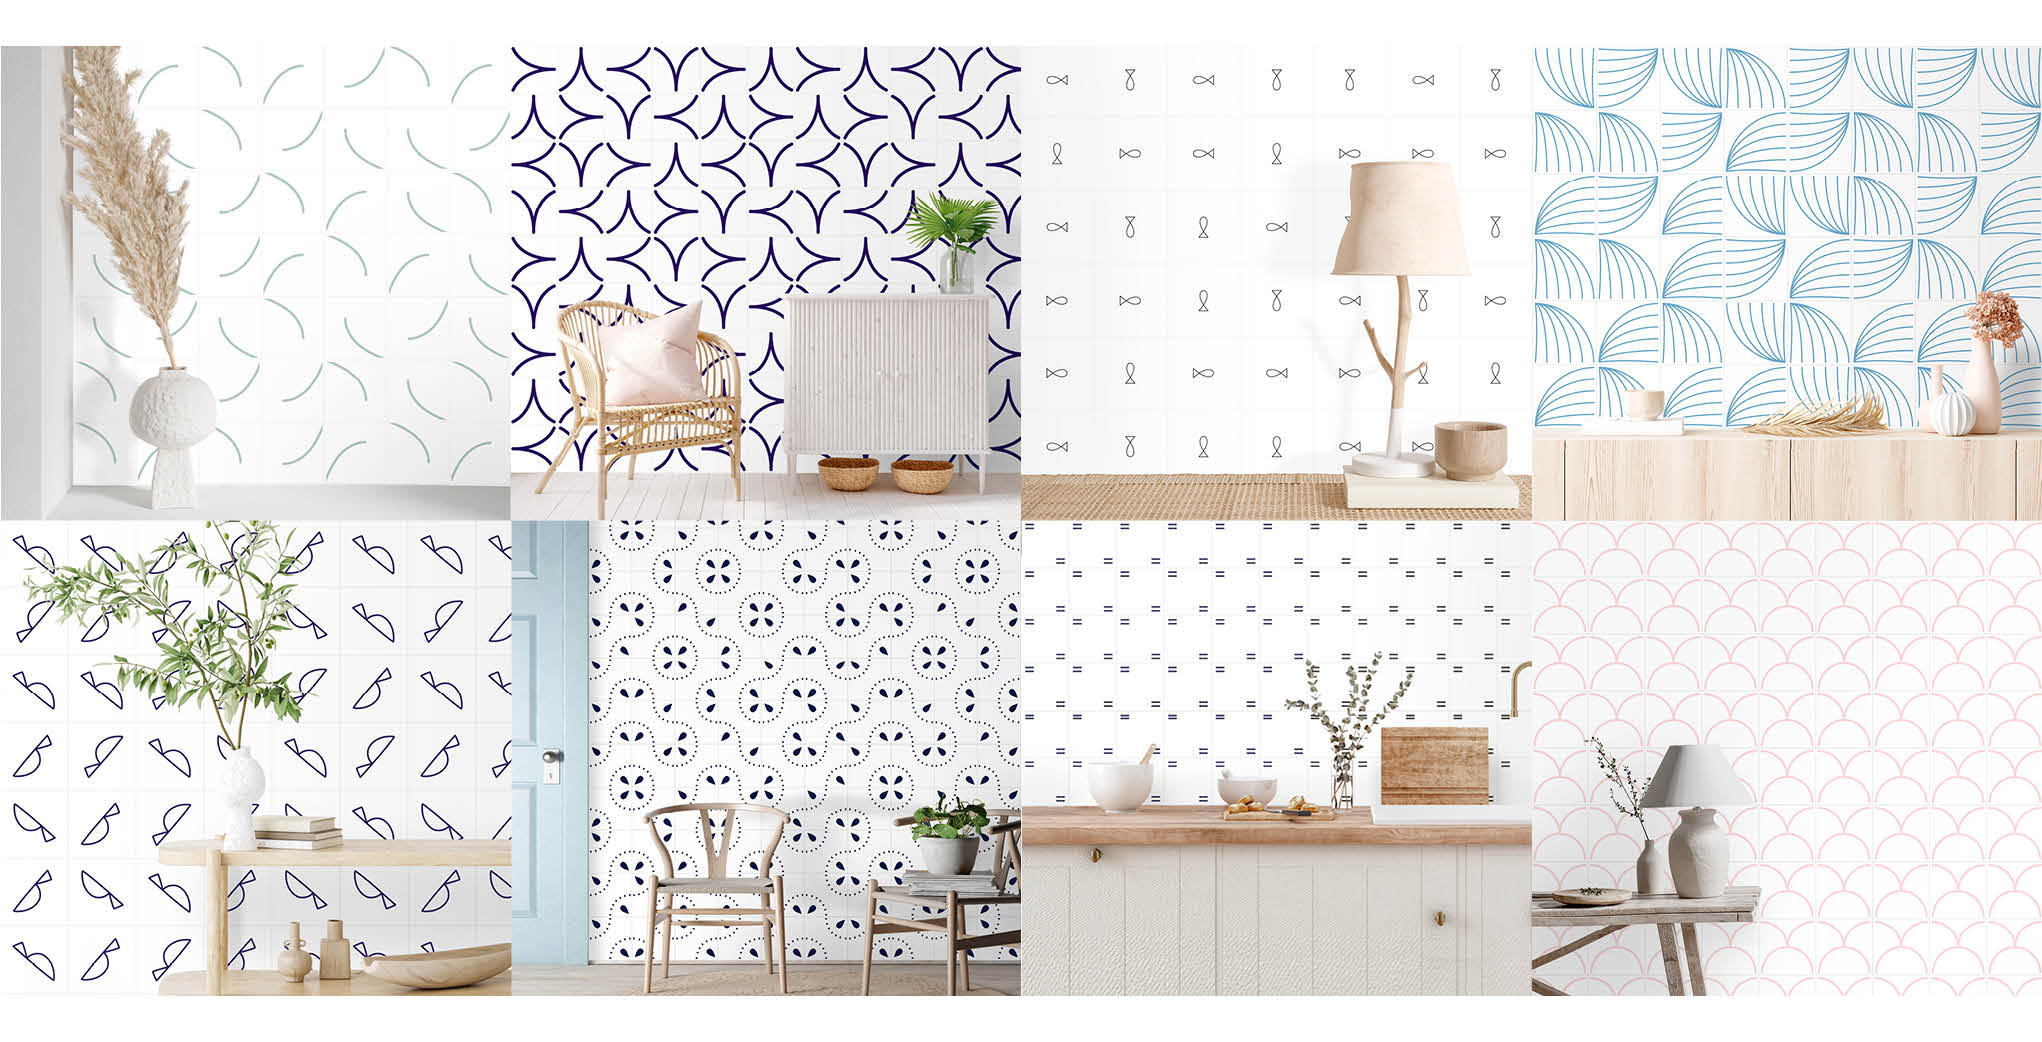 Diversas ilustrações de azulejos modernos compondo ambientes domésticos